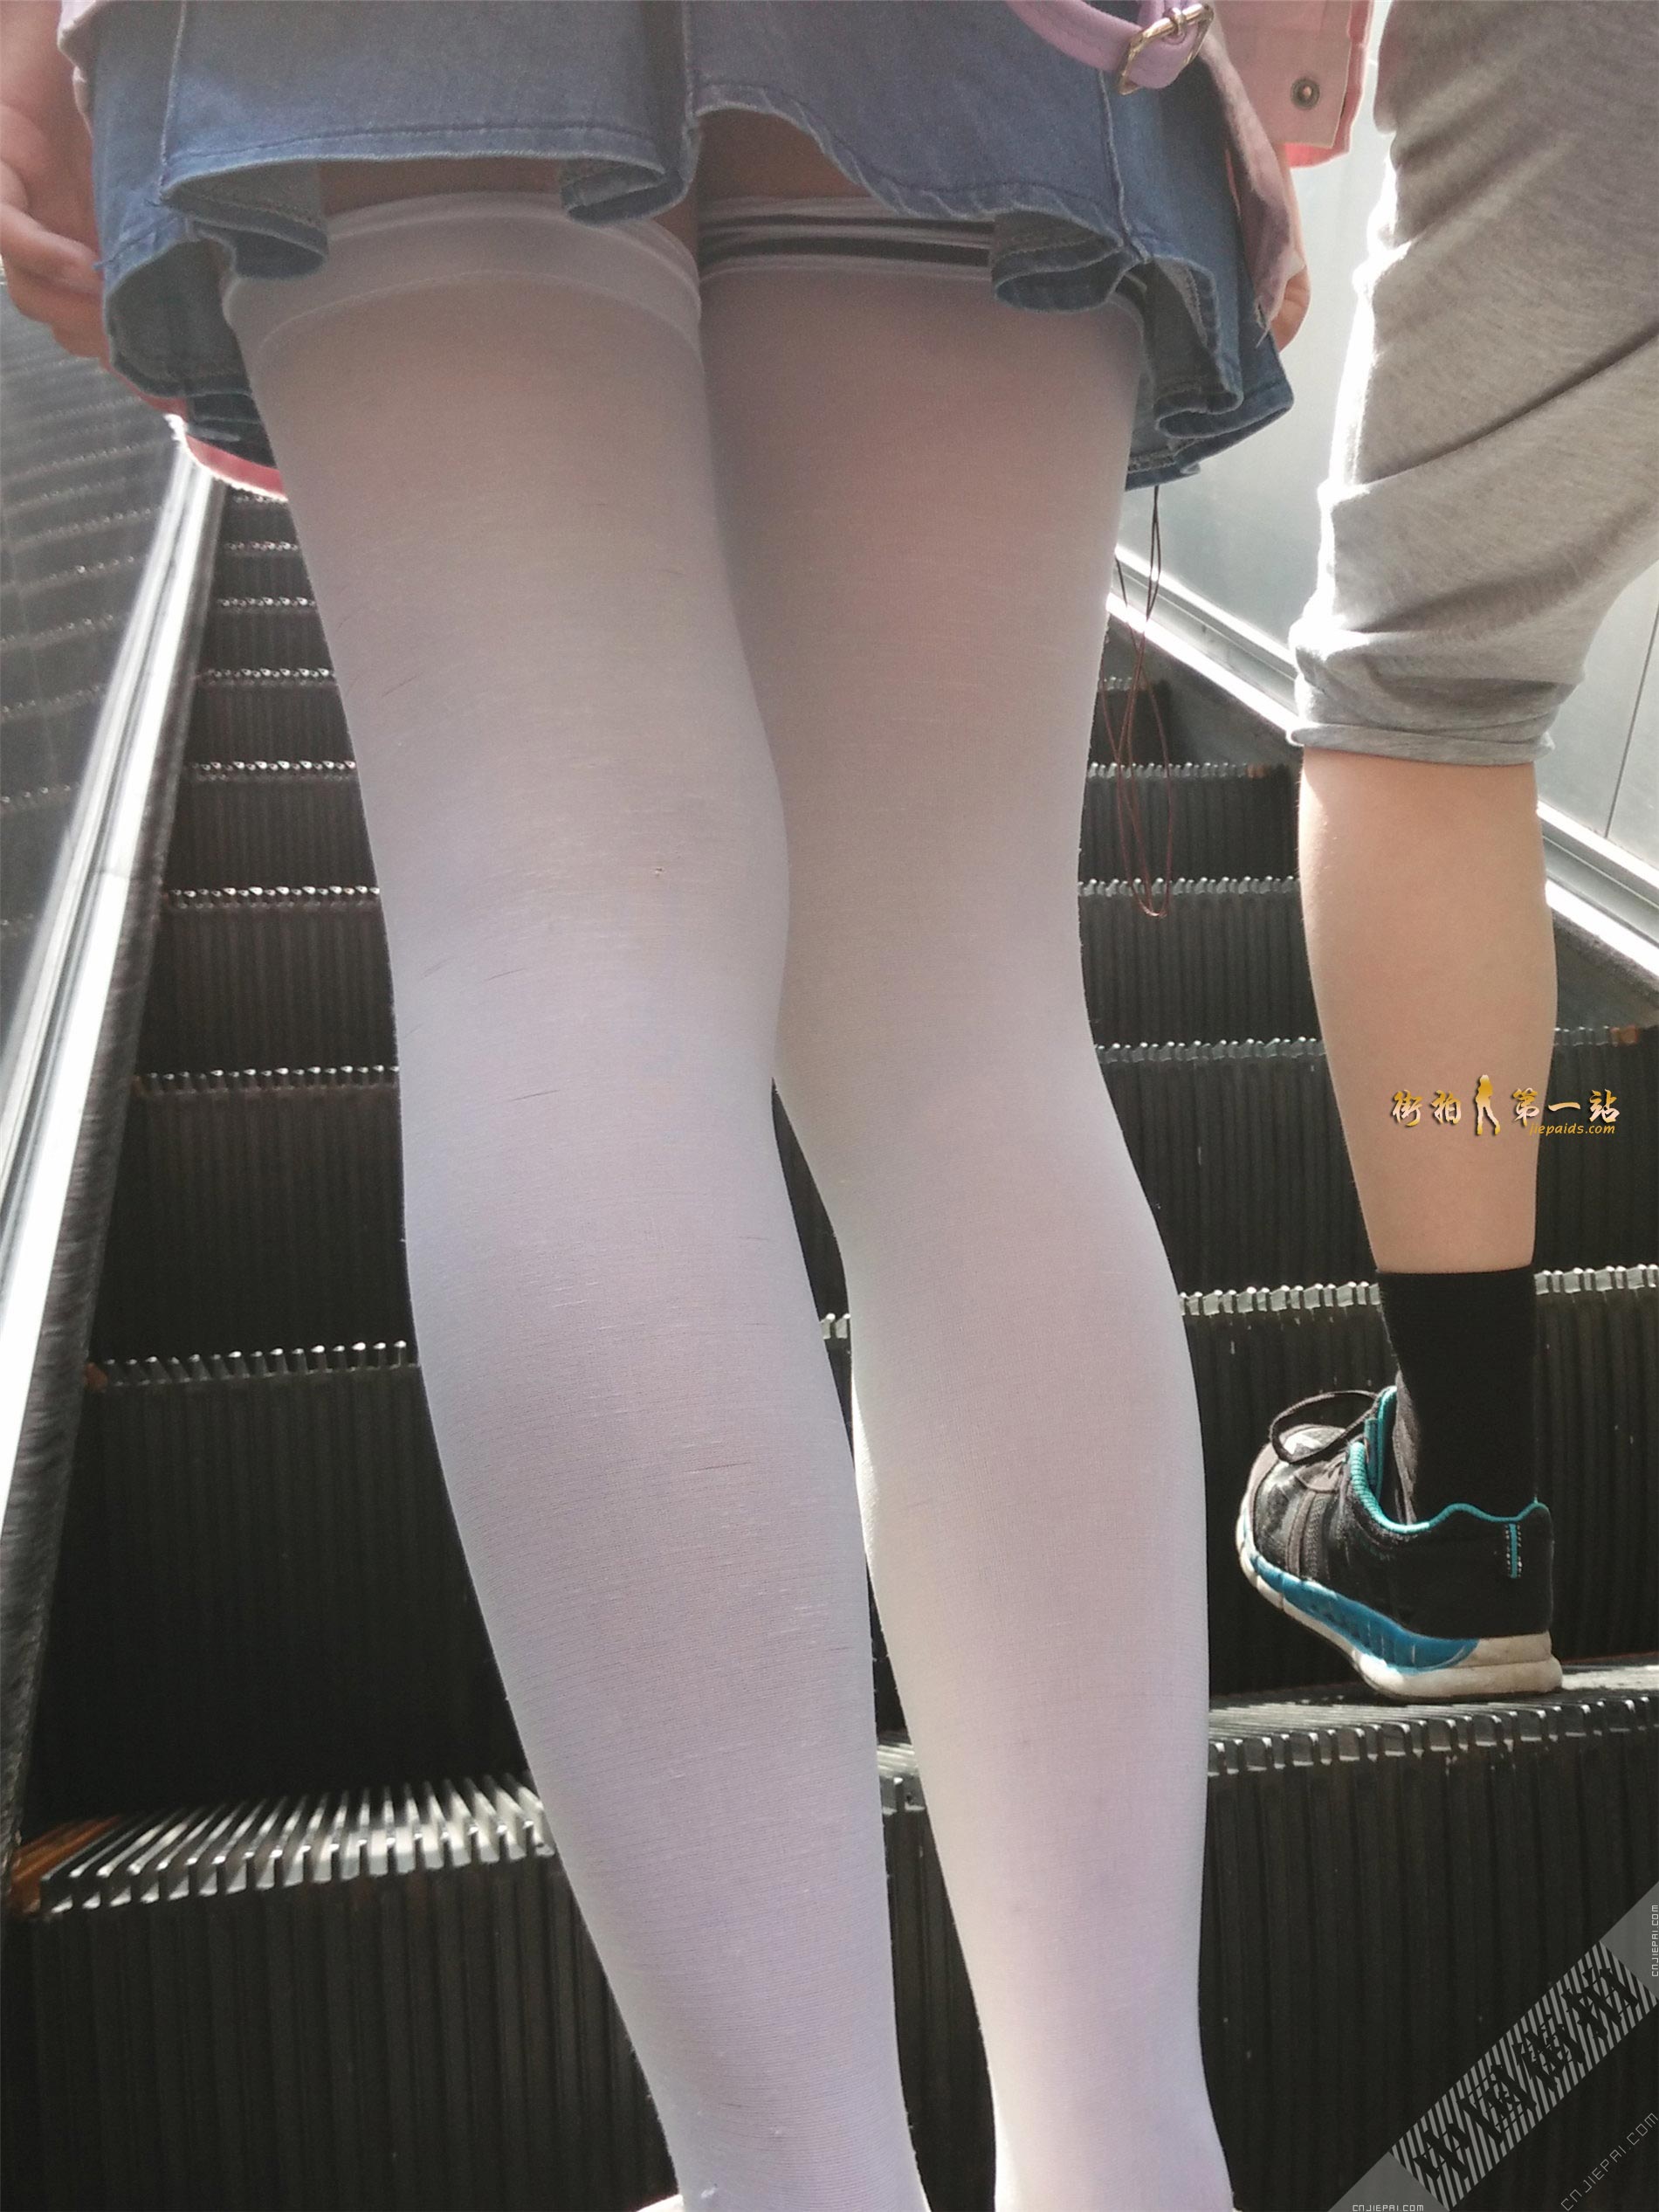 跟拍上电梯的高筒袜短裙小姐姐 图11